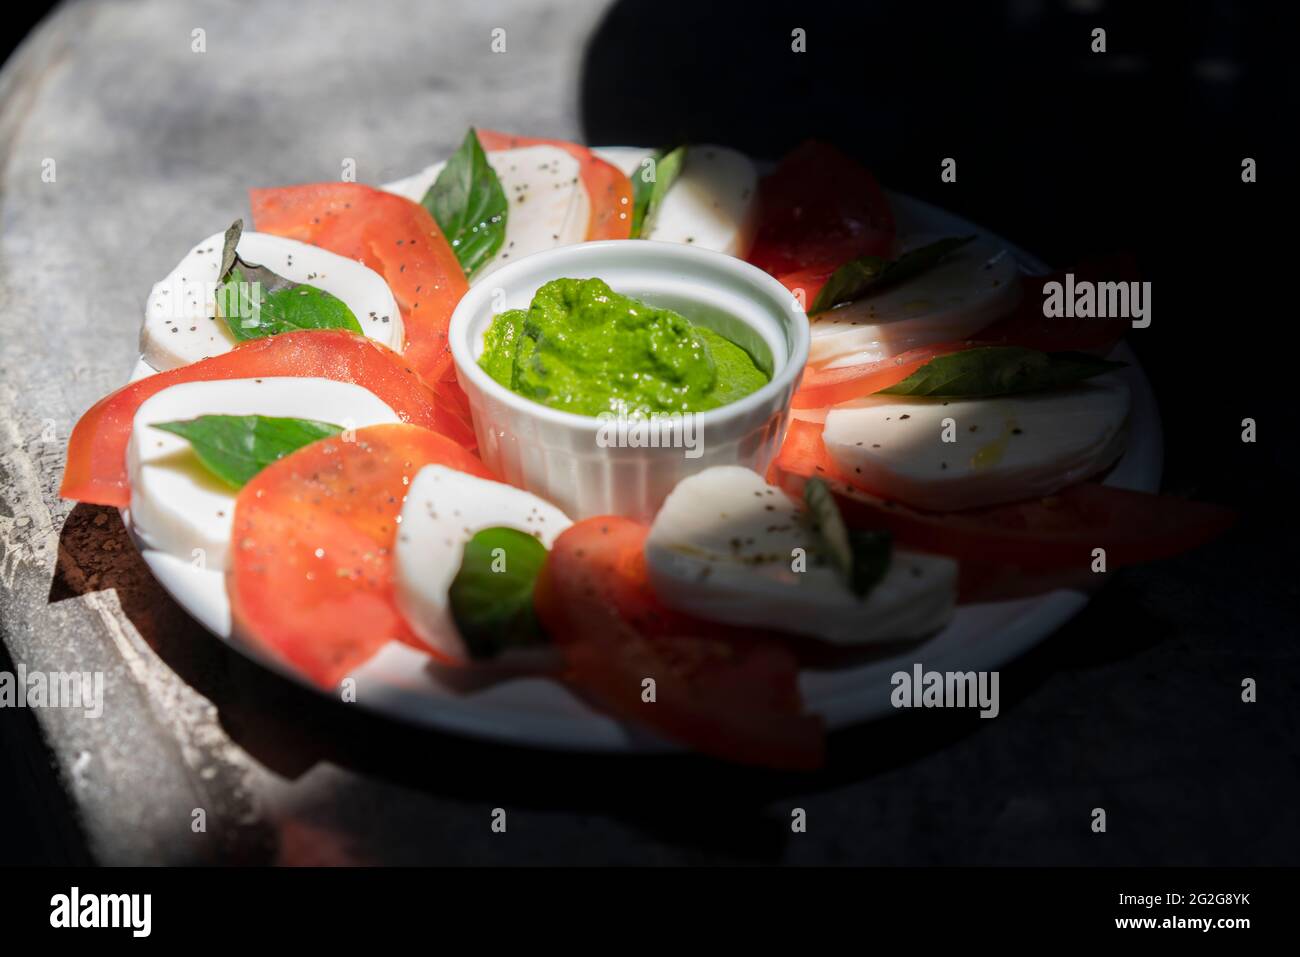 Salade Caprese sur une surface en béton avec pesto aux épinards Banque D'Images